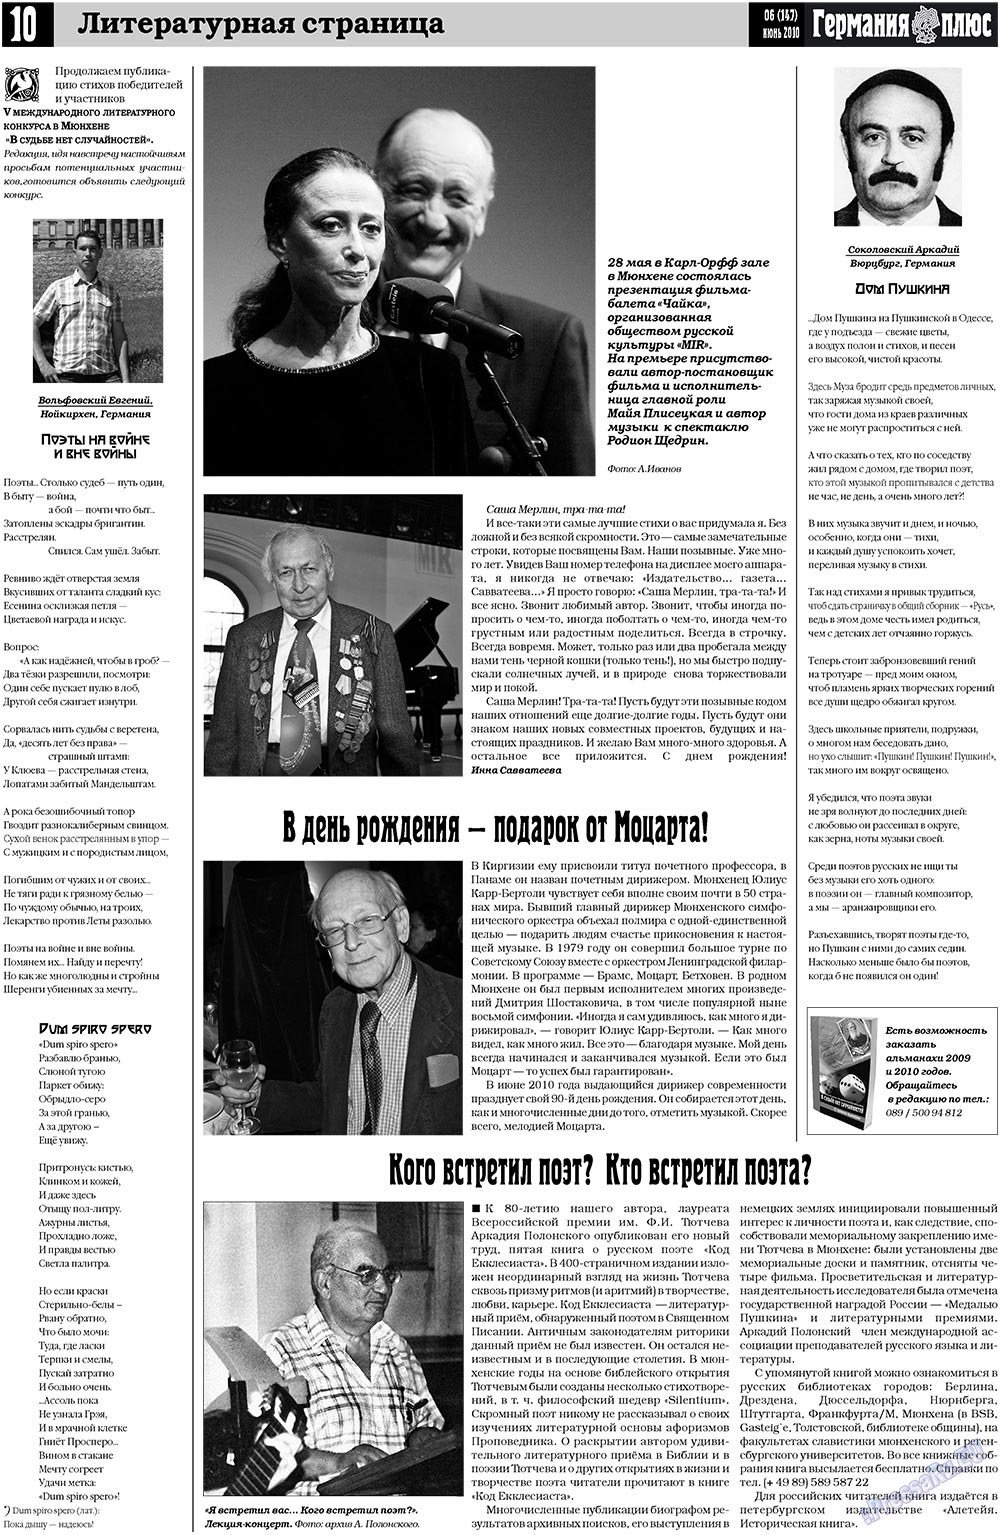 Германия плюс (газета). 2010 год, номер 6, стр. 10